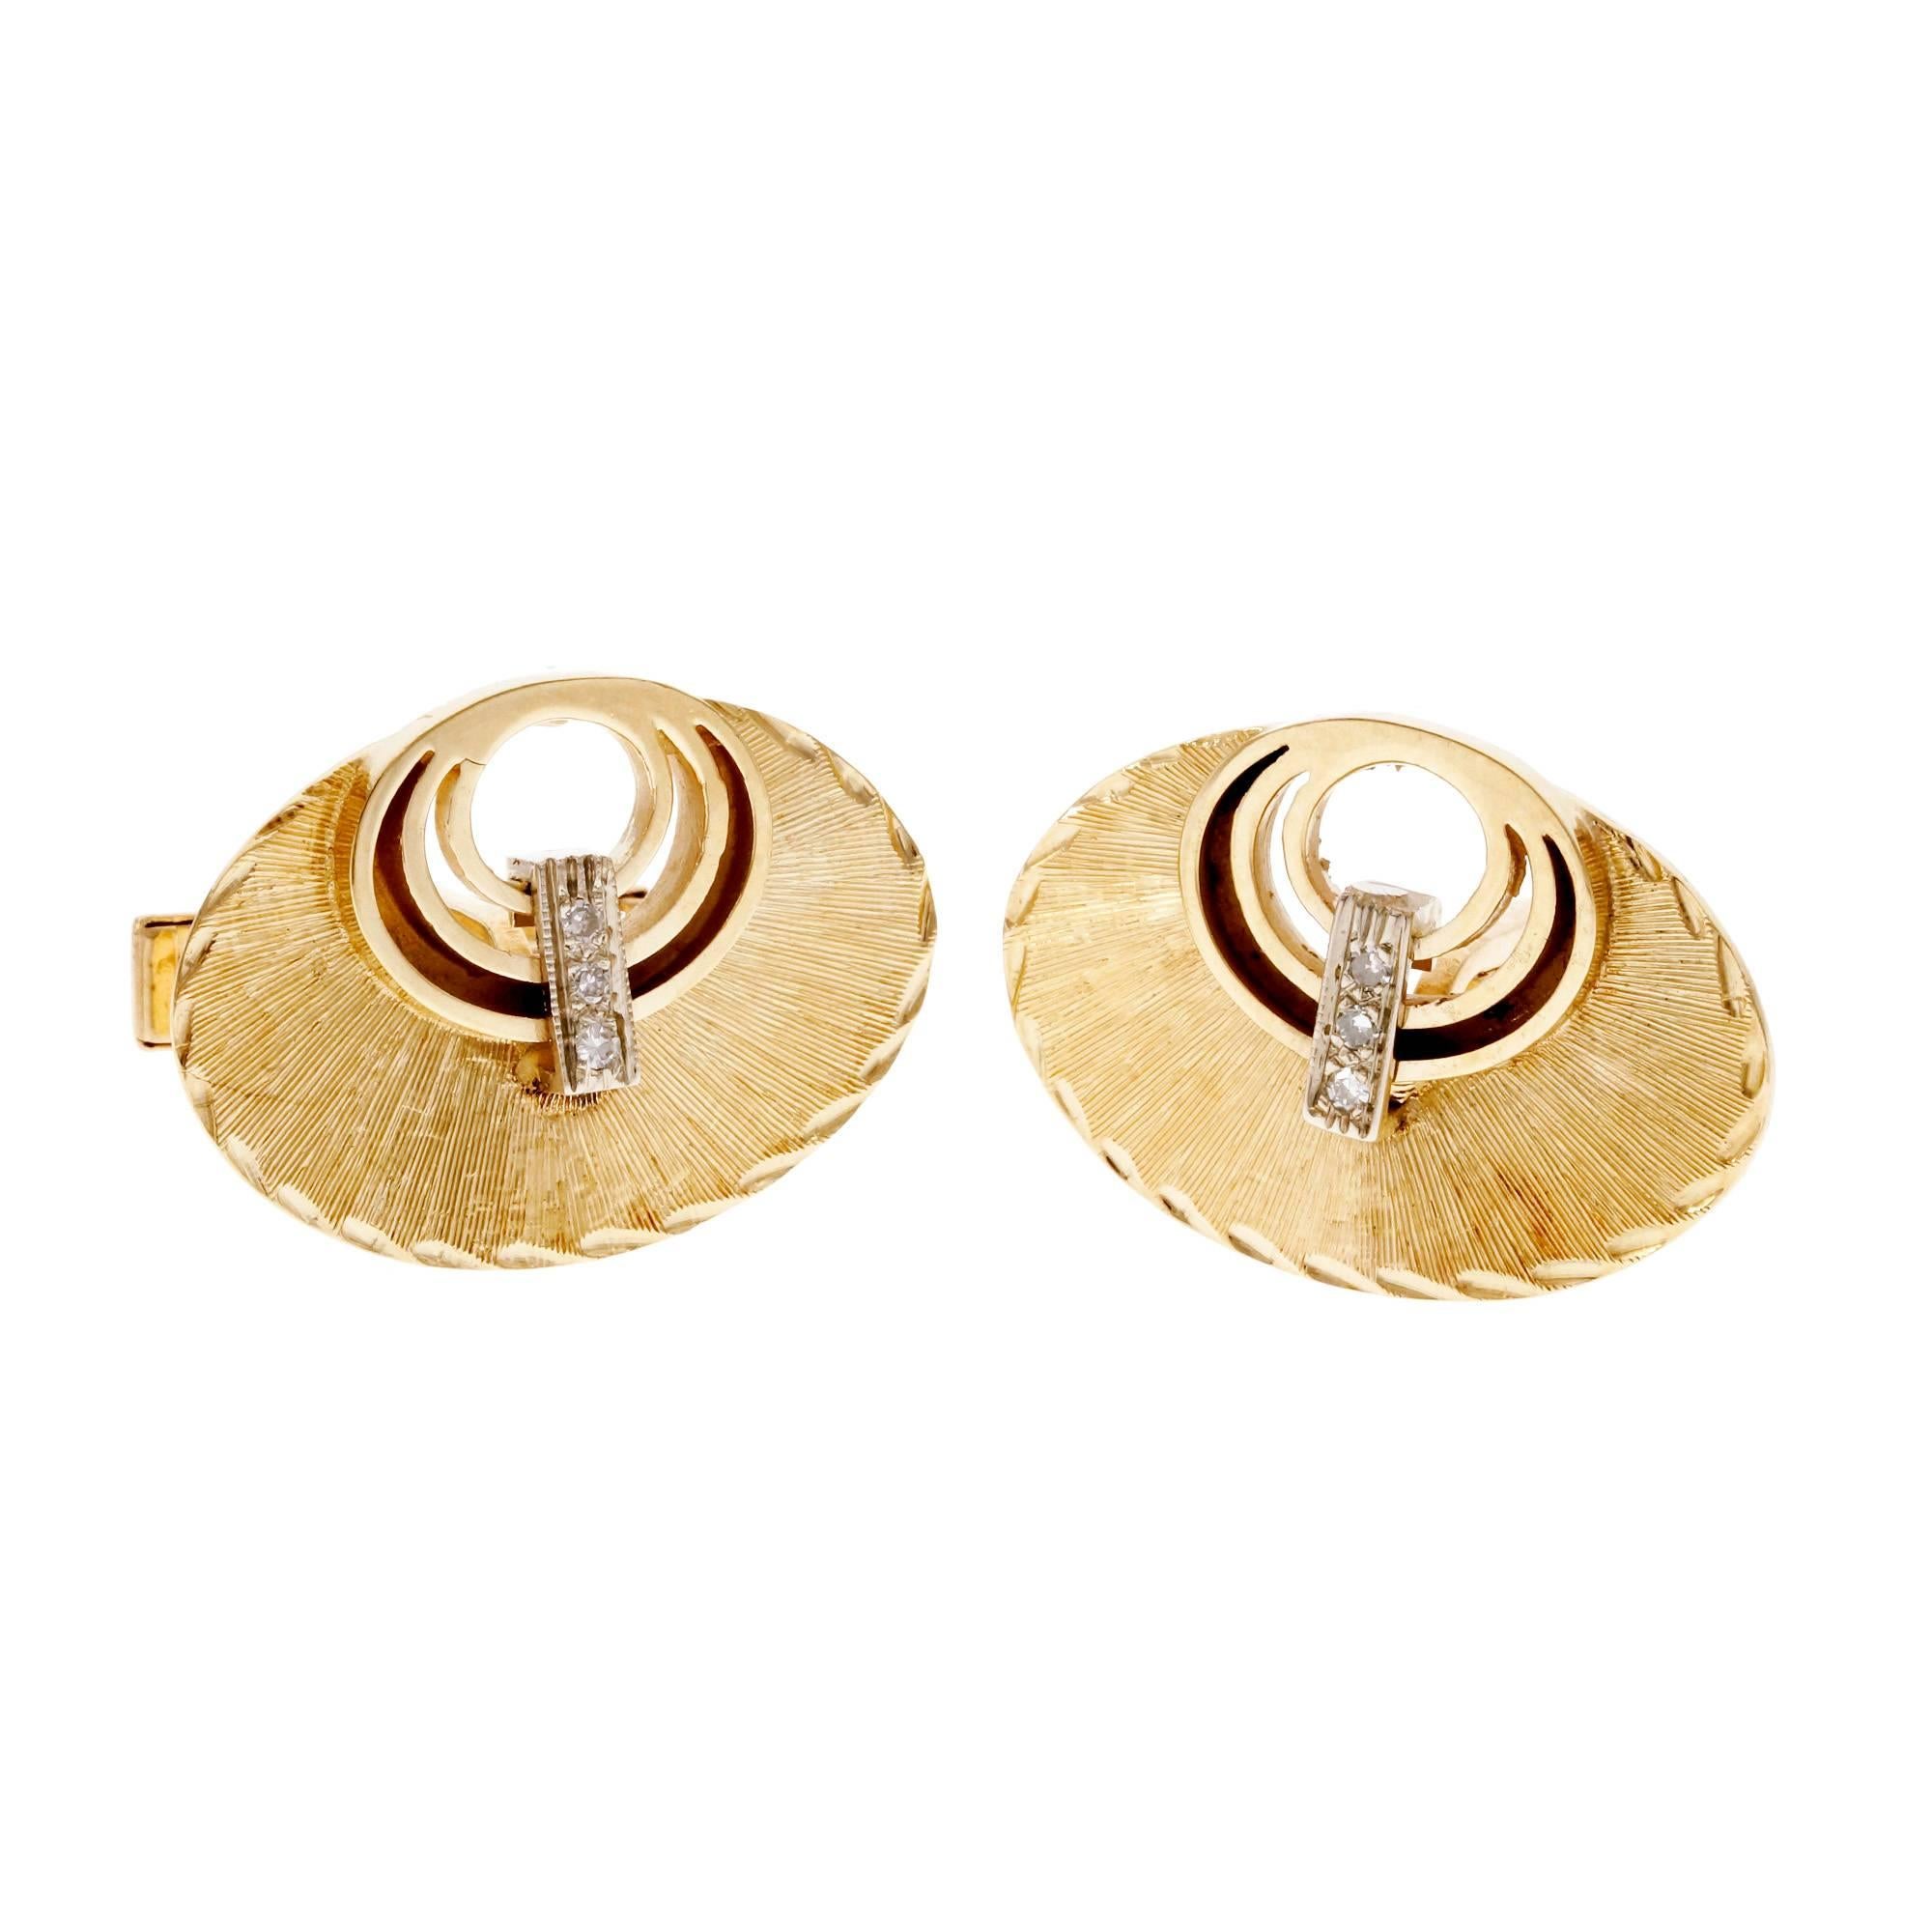 Ovale strukturierte Manschettenknöpfe mit Diamanten aus Gold